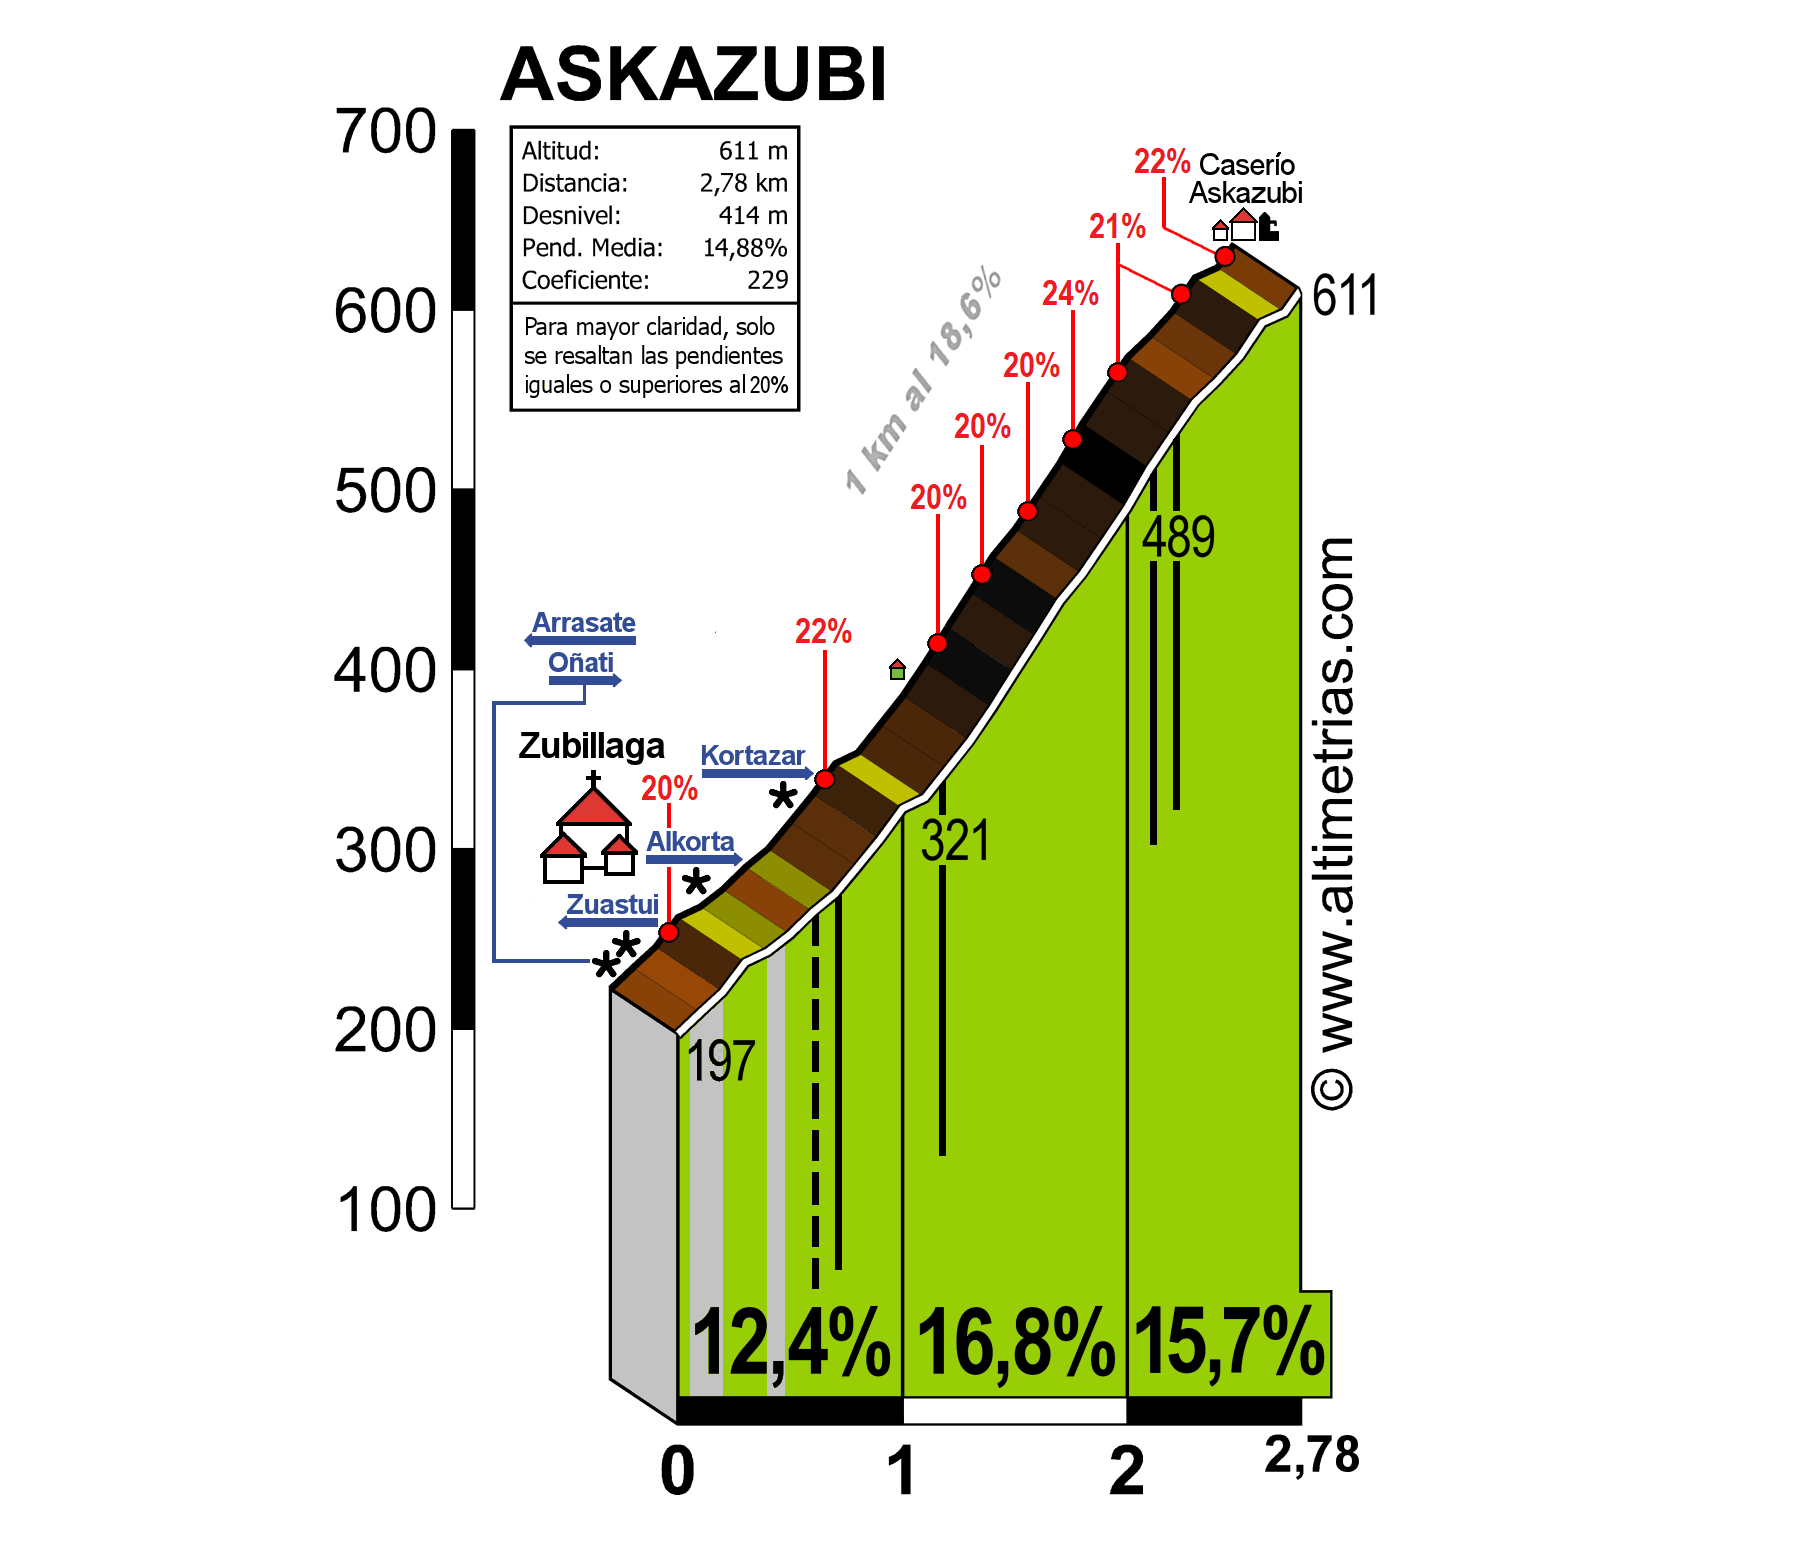 Askazubi